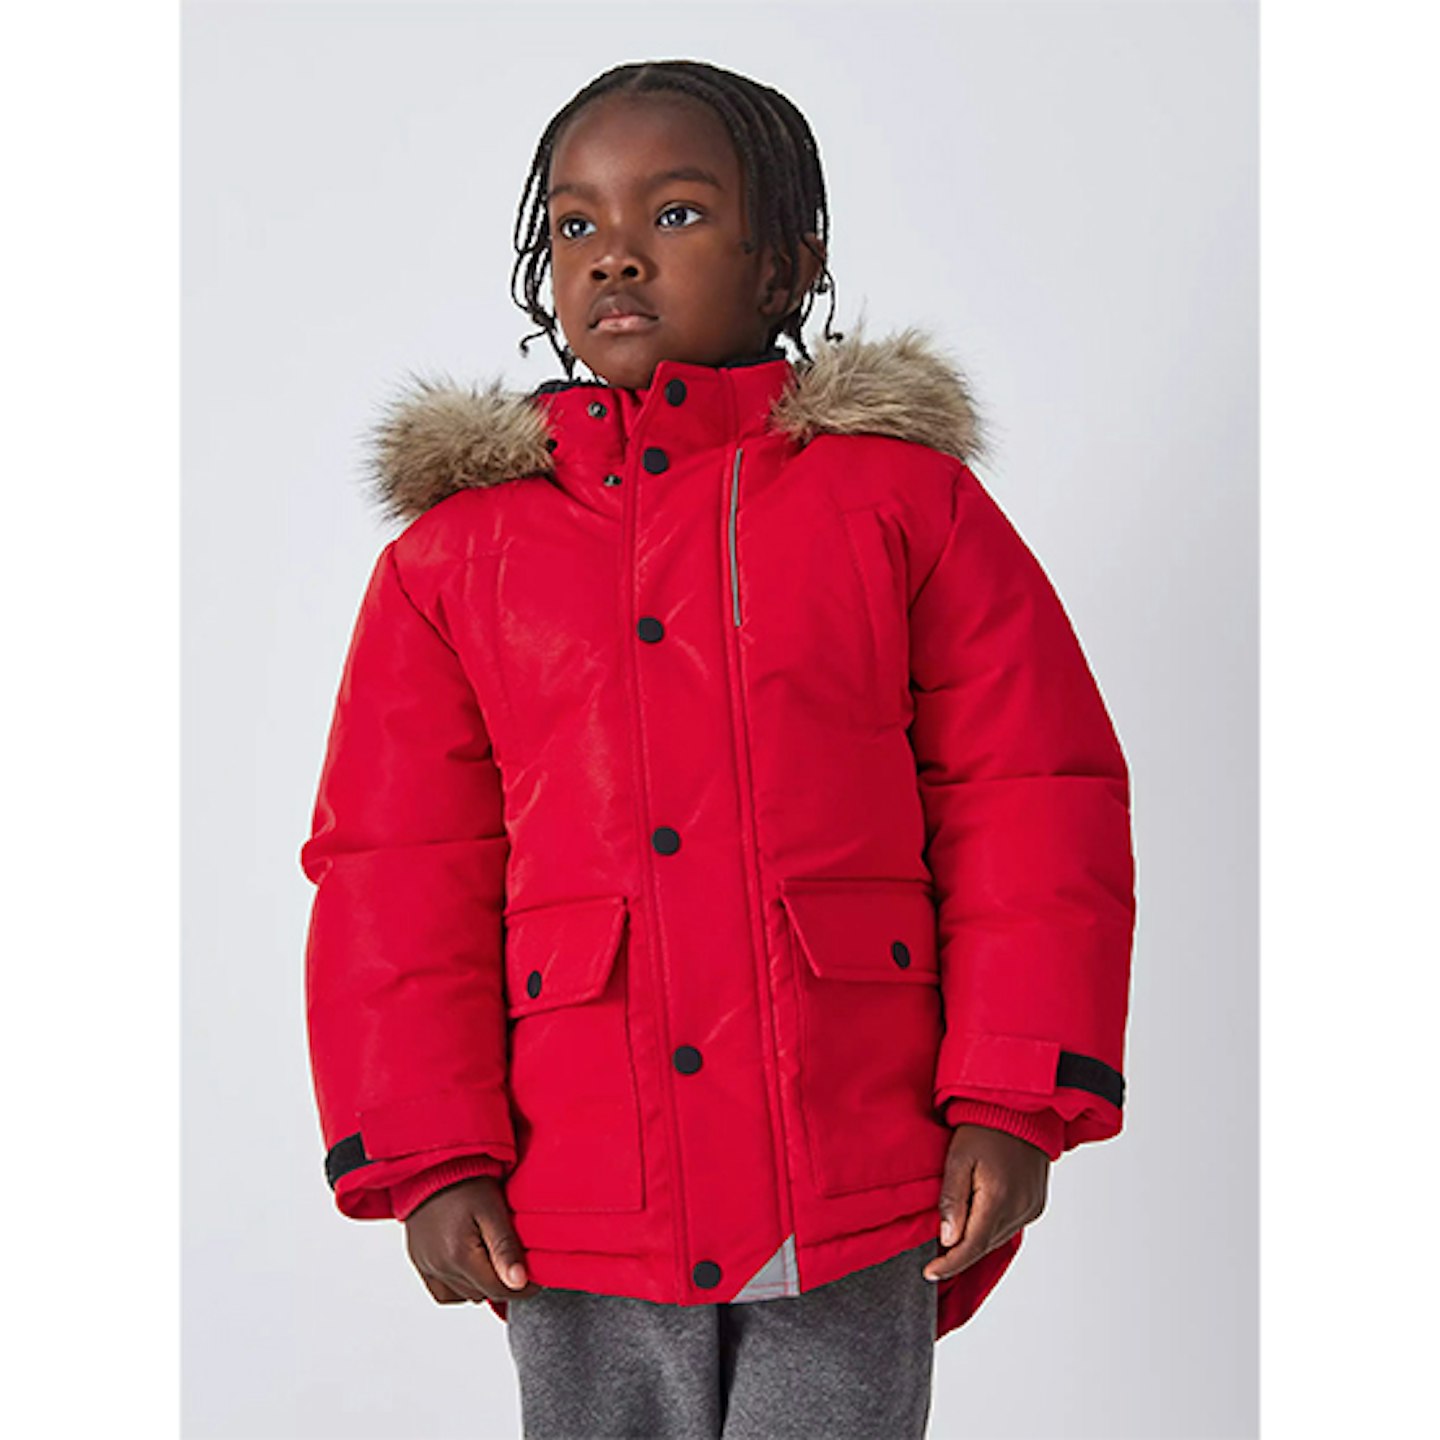 Red children's coat